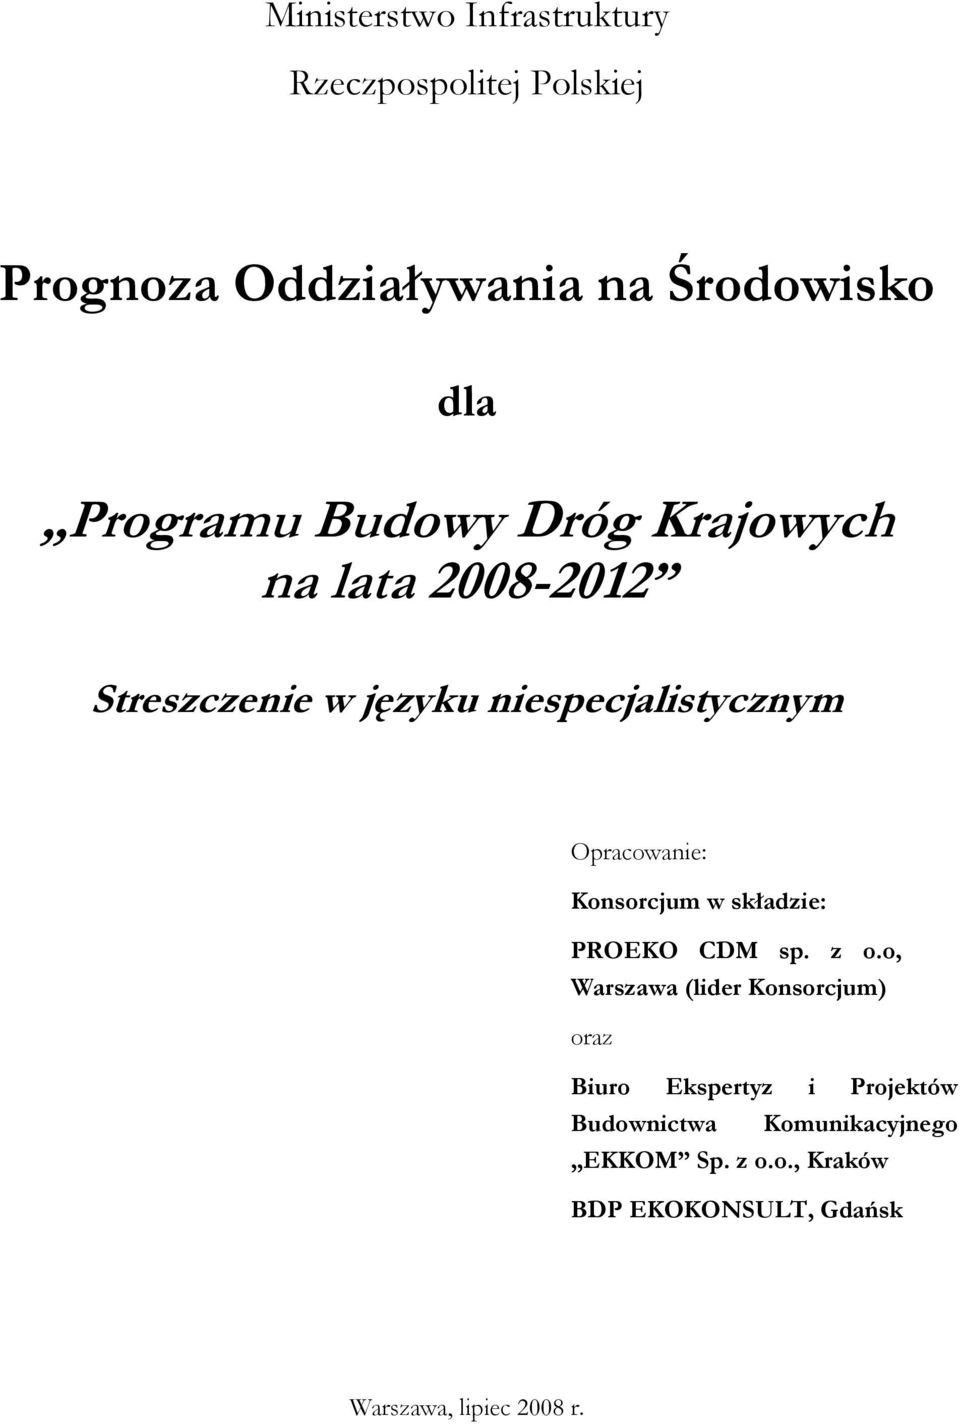 Opracowanie: Konsorcjum w składzie: PROEKO CDM sp. z o.